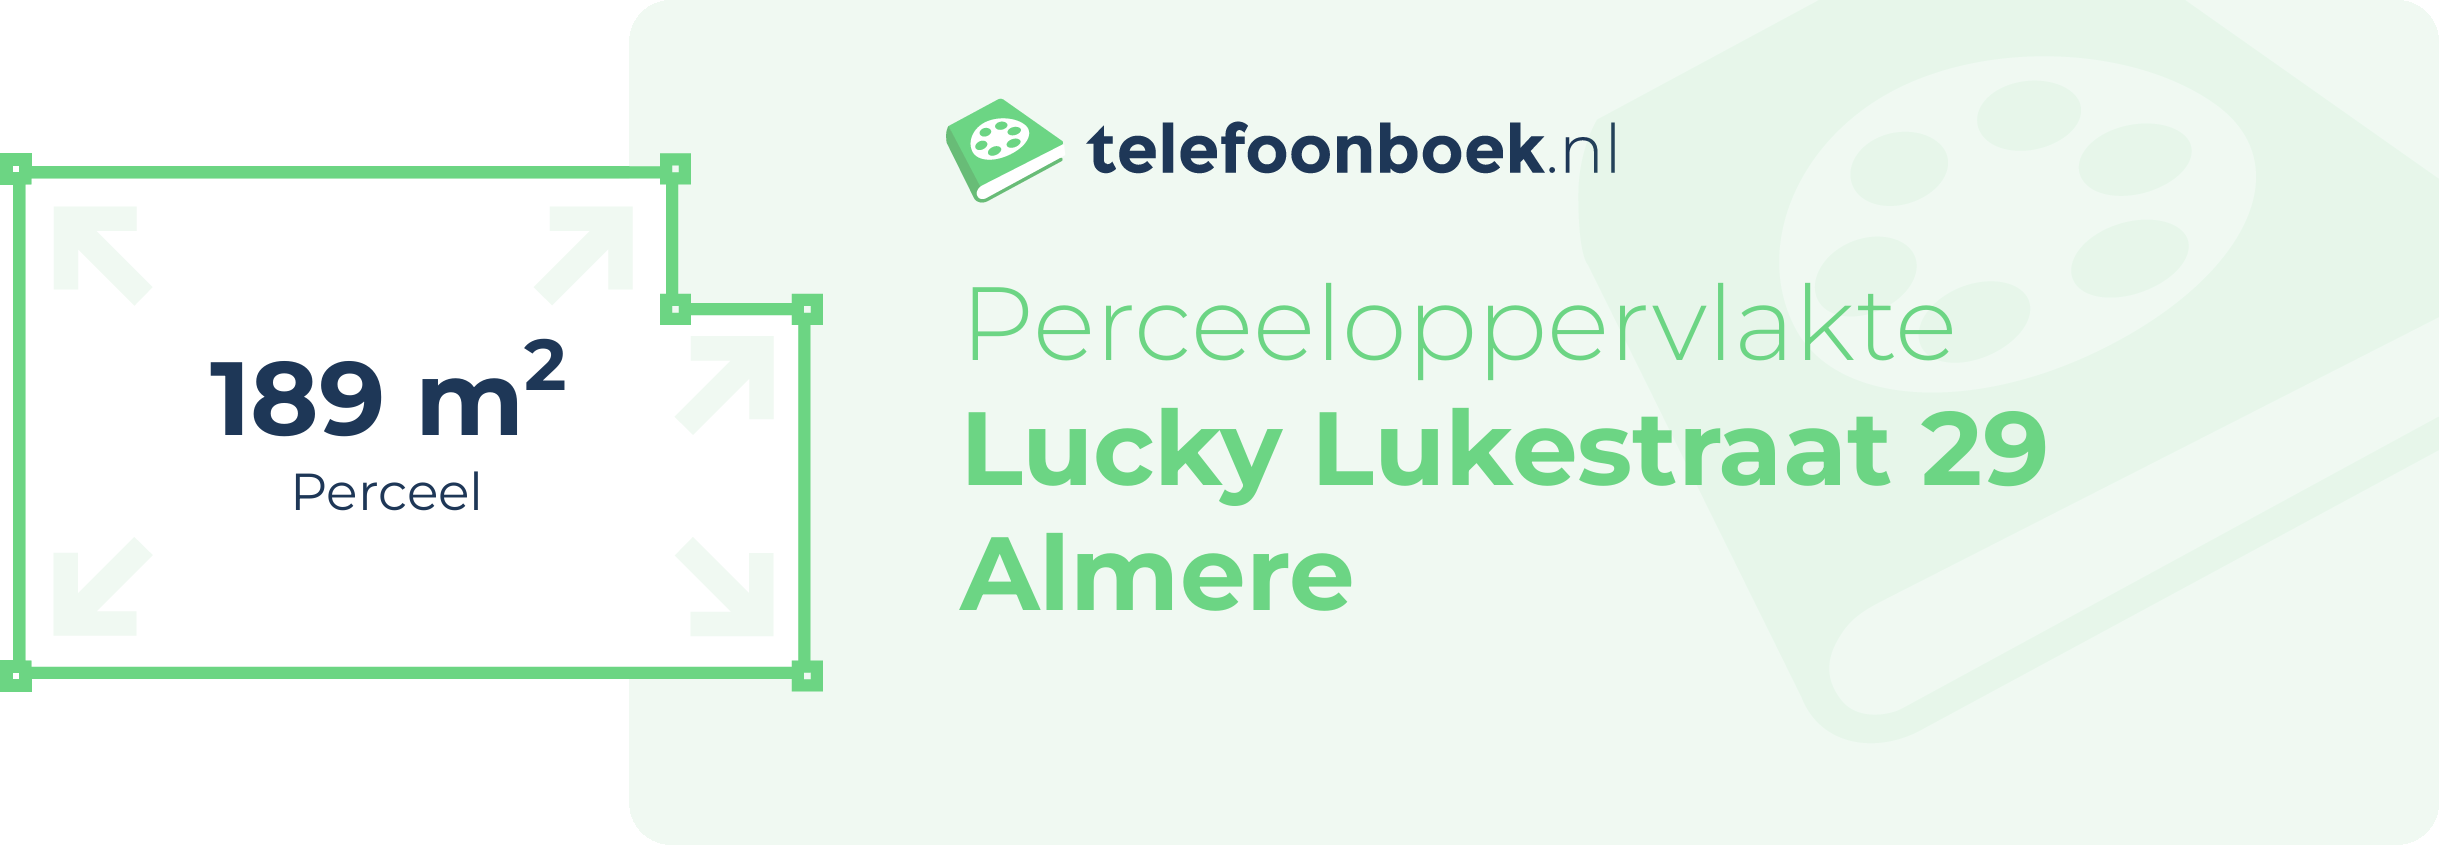 Perceeloppervlakte Lucky Lukestraat 29 Almere